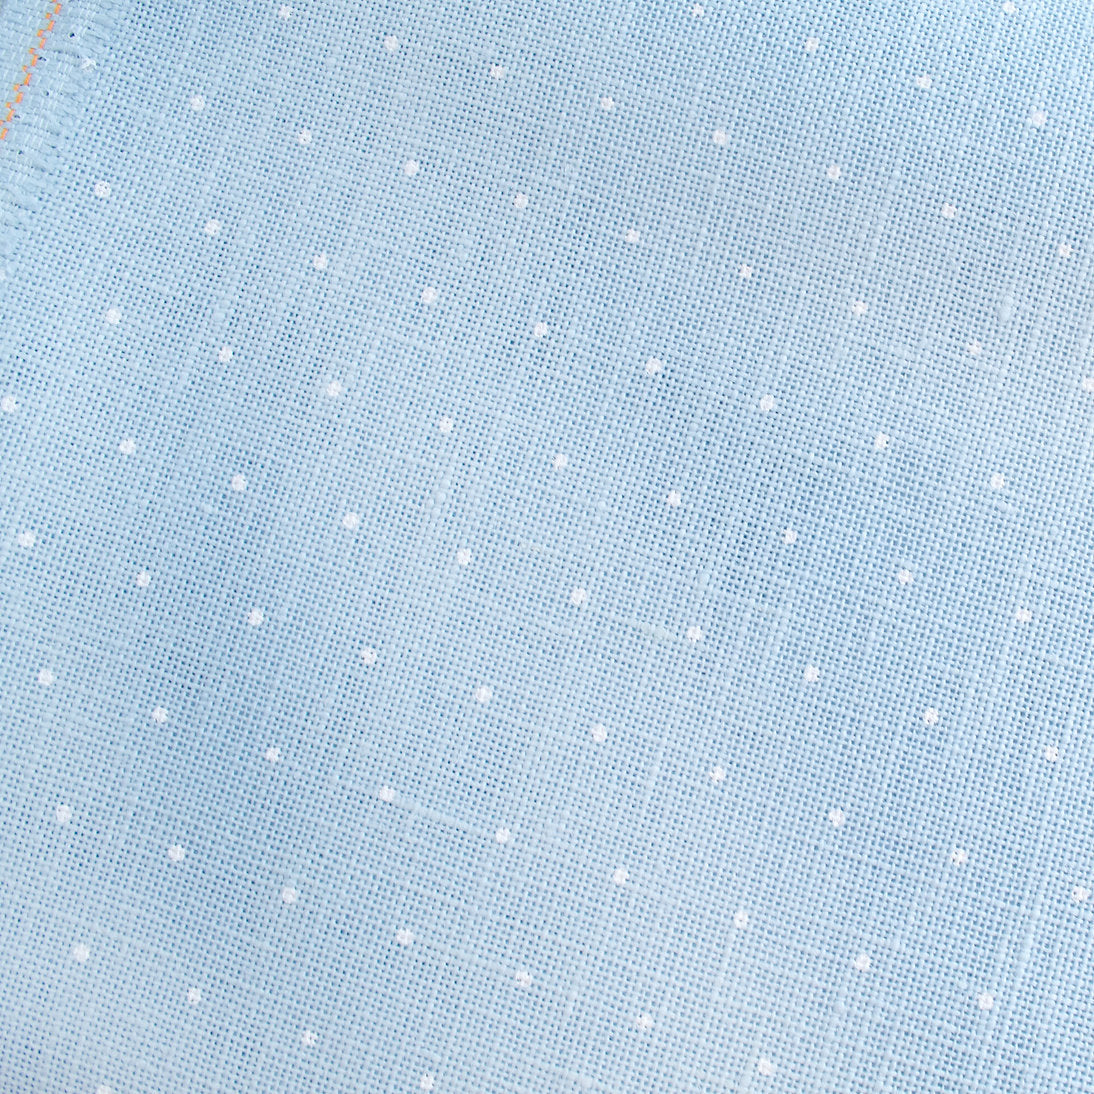 3281/5469 Cashel Mini Dots Fabric 28 ct. from ZWEIGART 100% linen